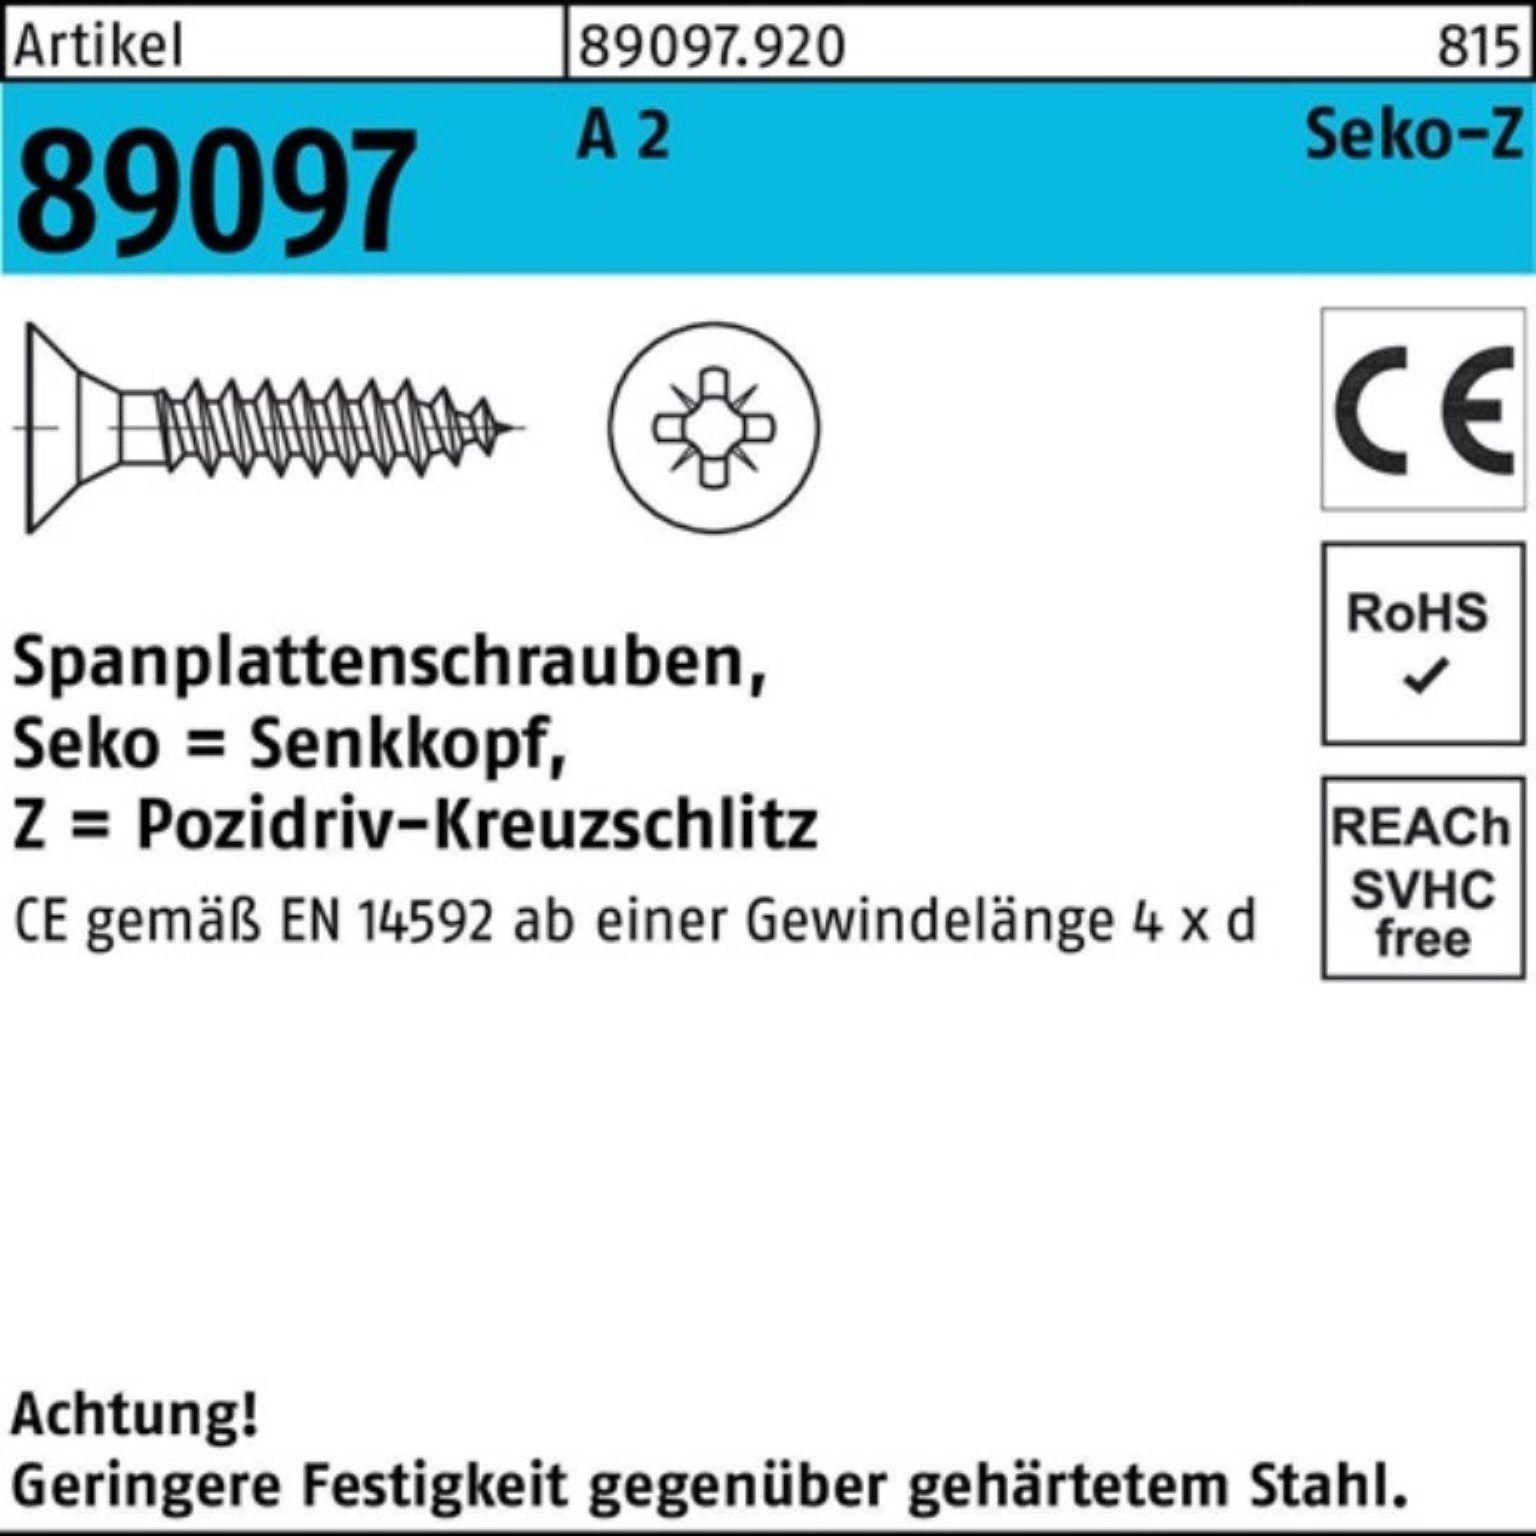 Reyher Spanplattenschraube 1000er Pack PZ 1000 A R VG 89097 4,5x 2 20-Z SEKO Spanplattenschraube